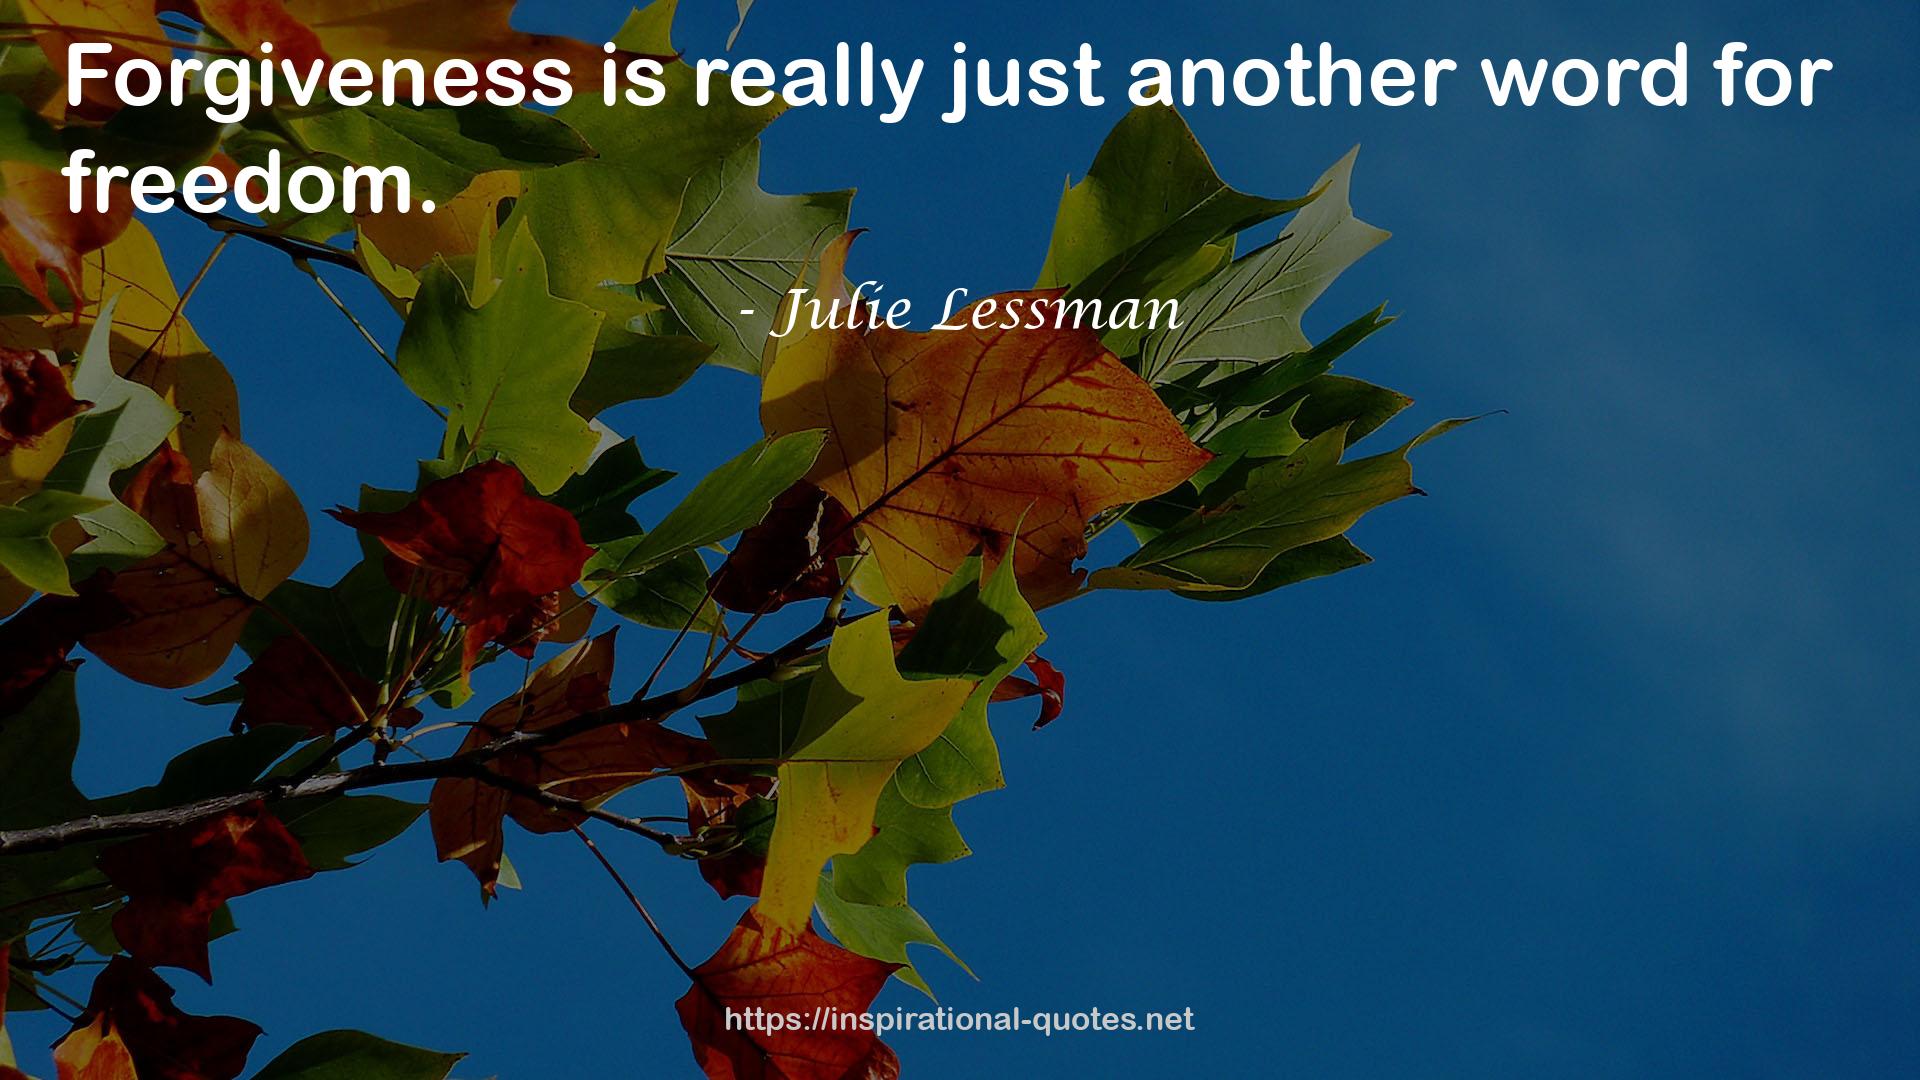 Julie Lessman QUOTES